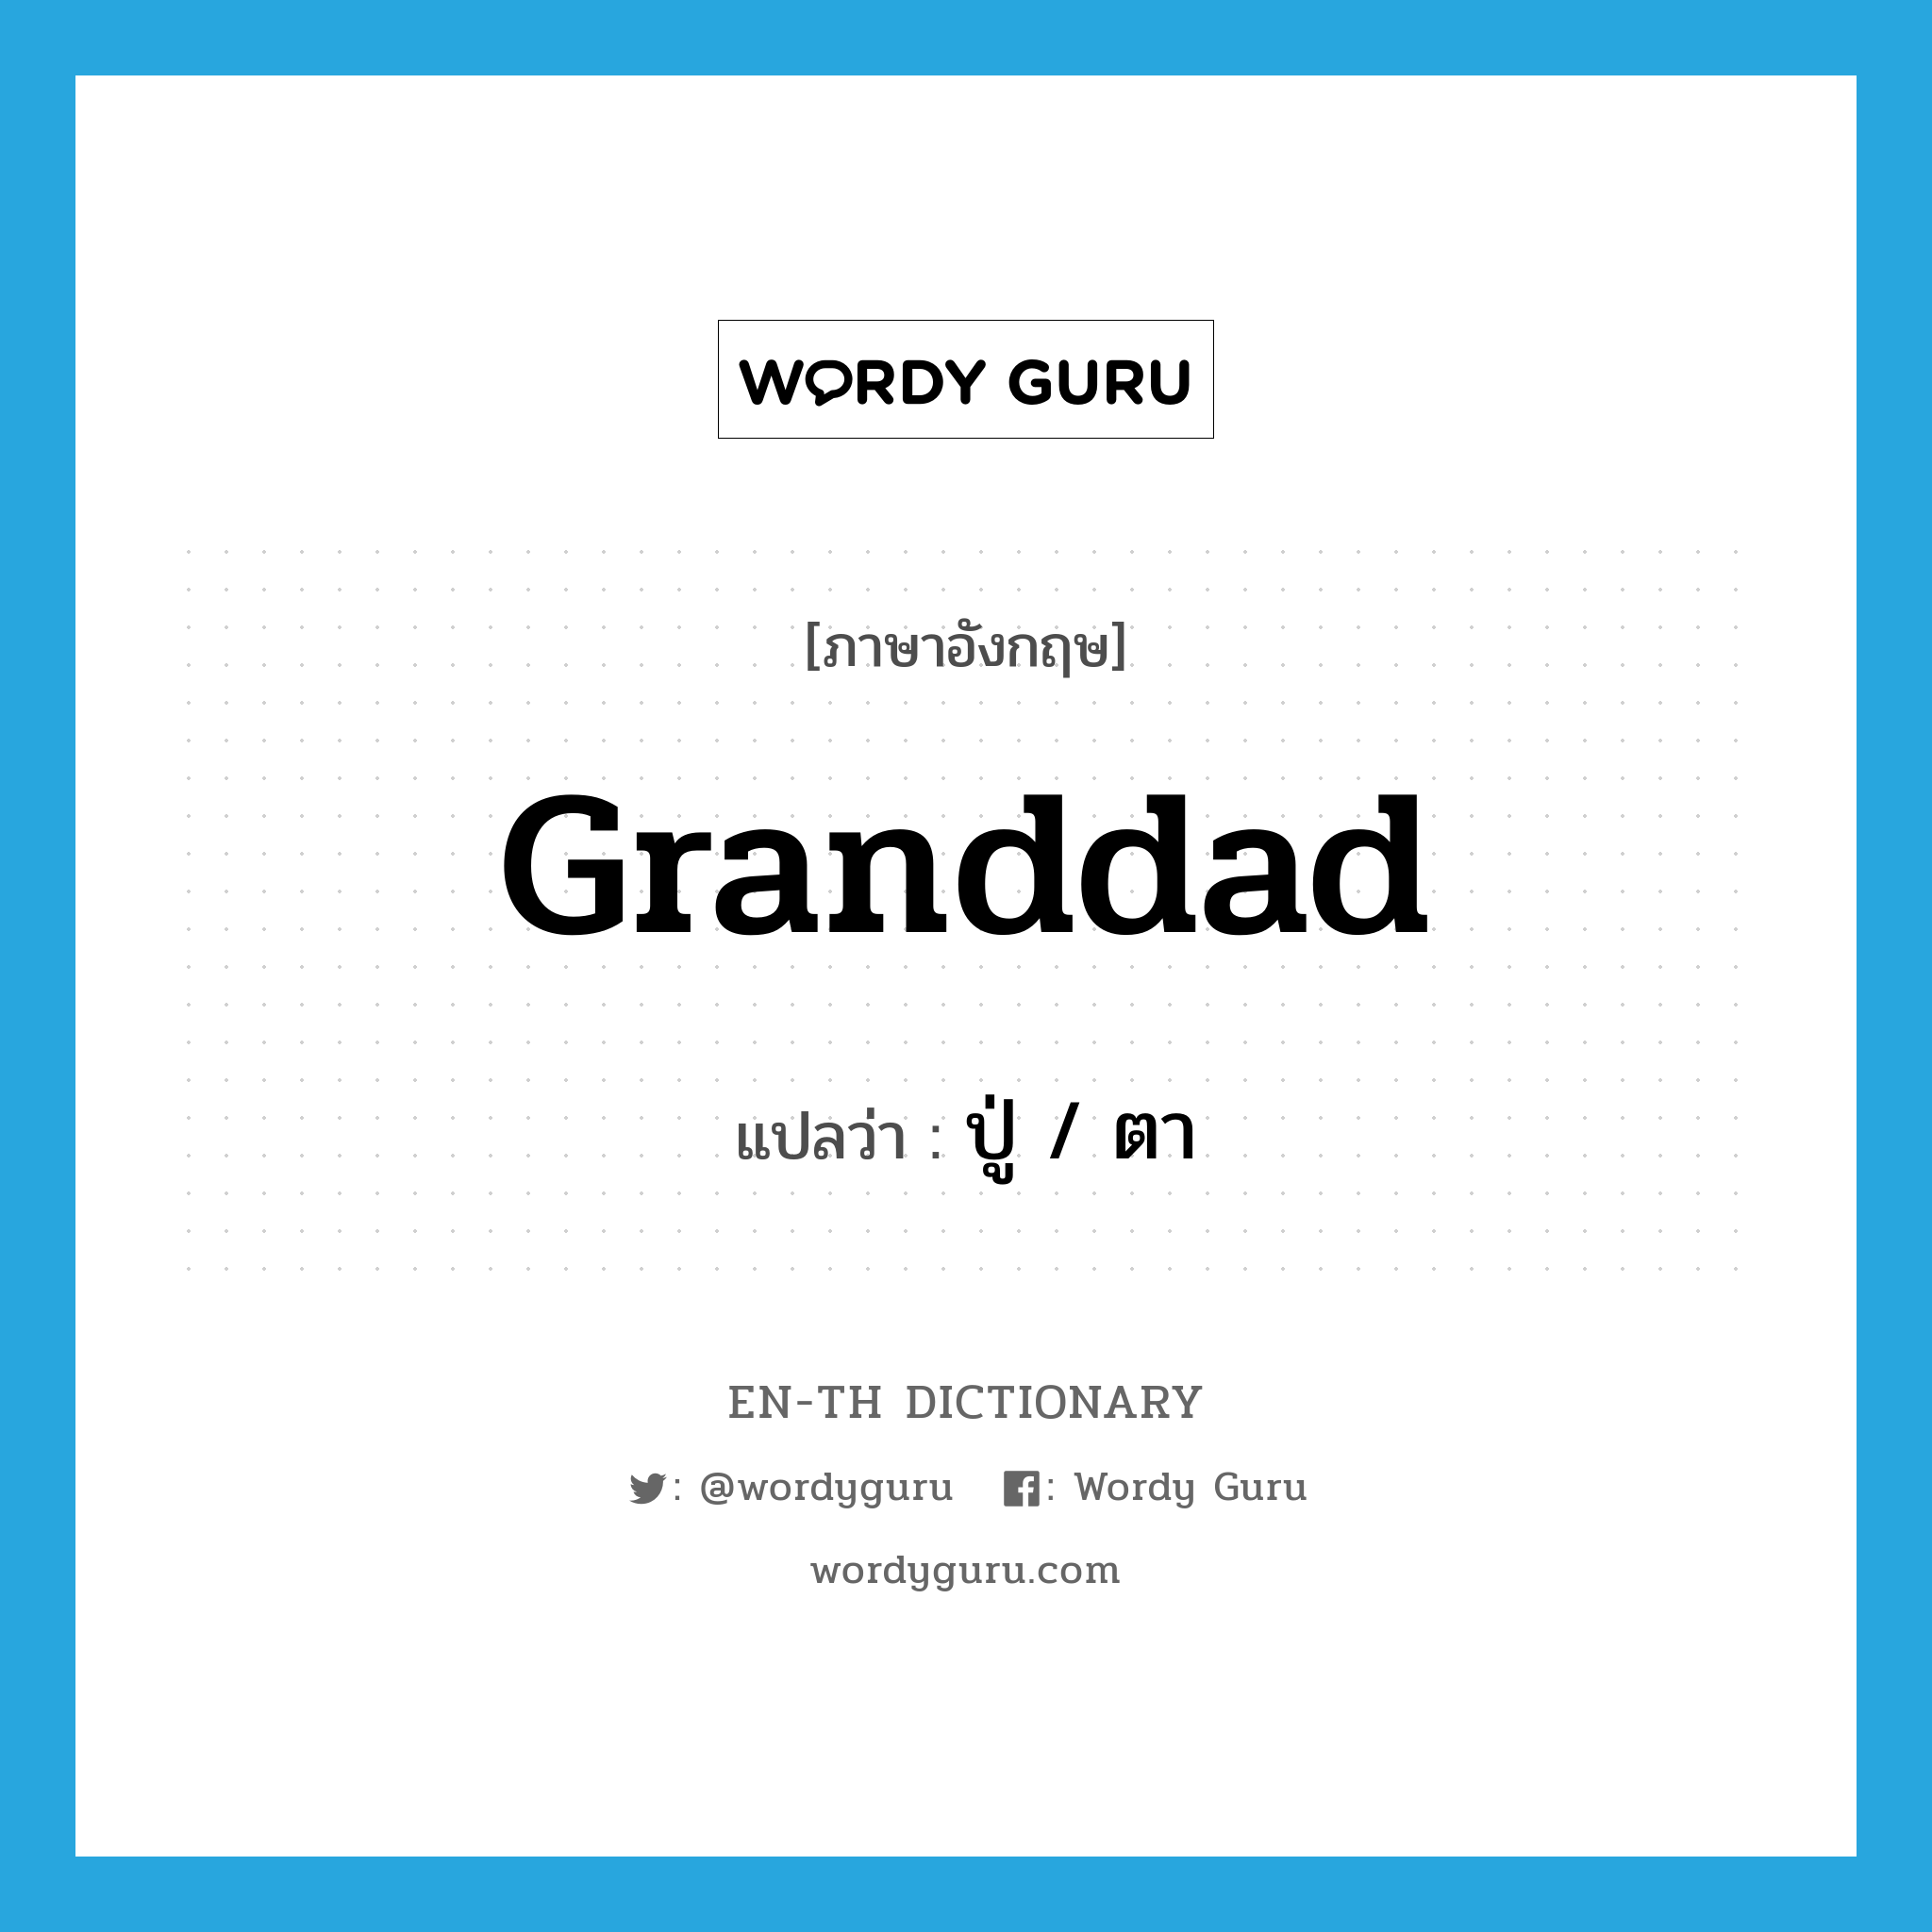 granddad แปลว่า?, คำศัพท์ภาษาอังกฤษ granddad แปลว่า ปู่ / ตา ประเภท N หมวด N